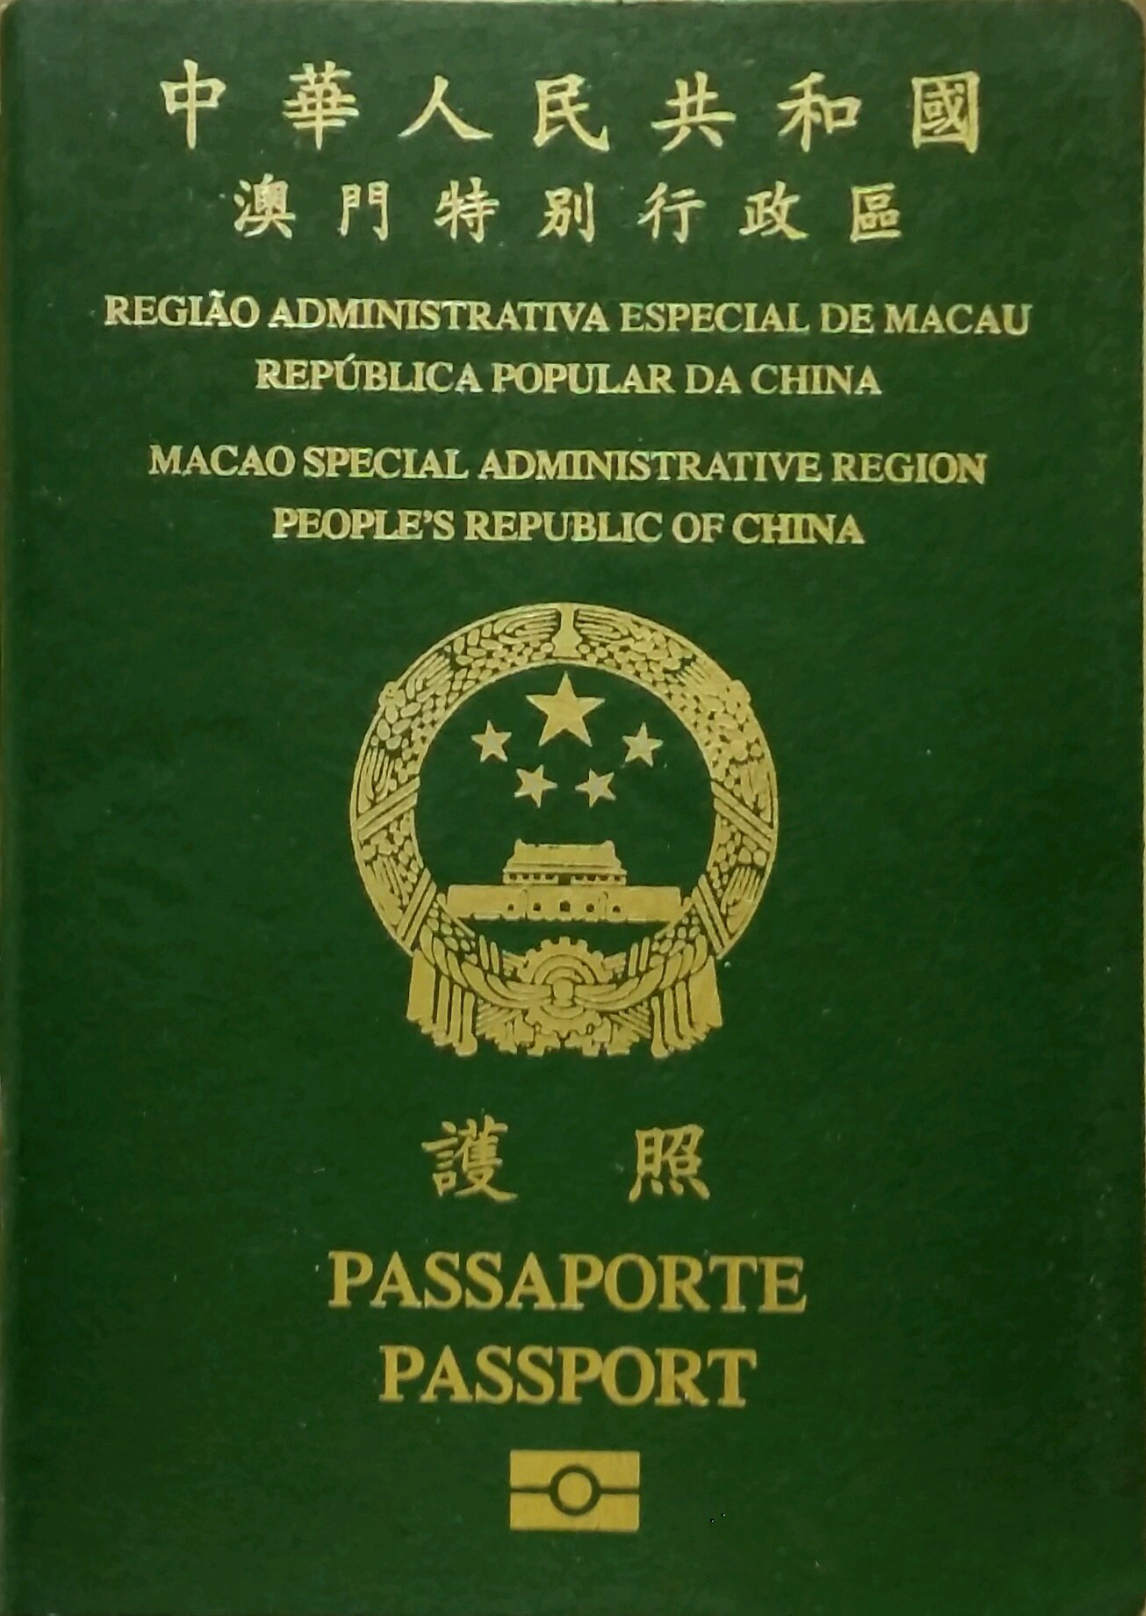 Passaporte da RAEM já deu problemas a cinco pessoas desde 2013